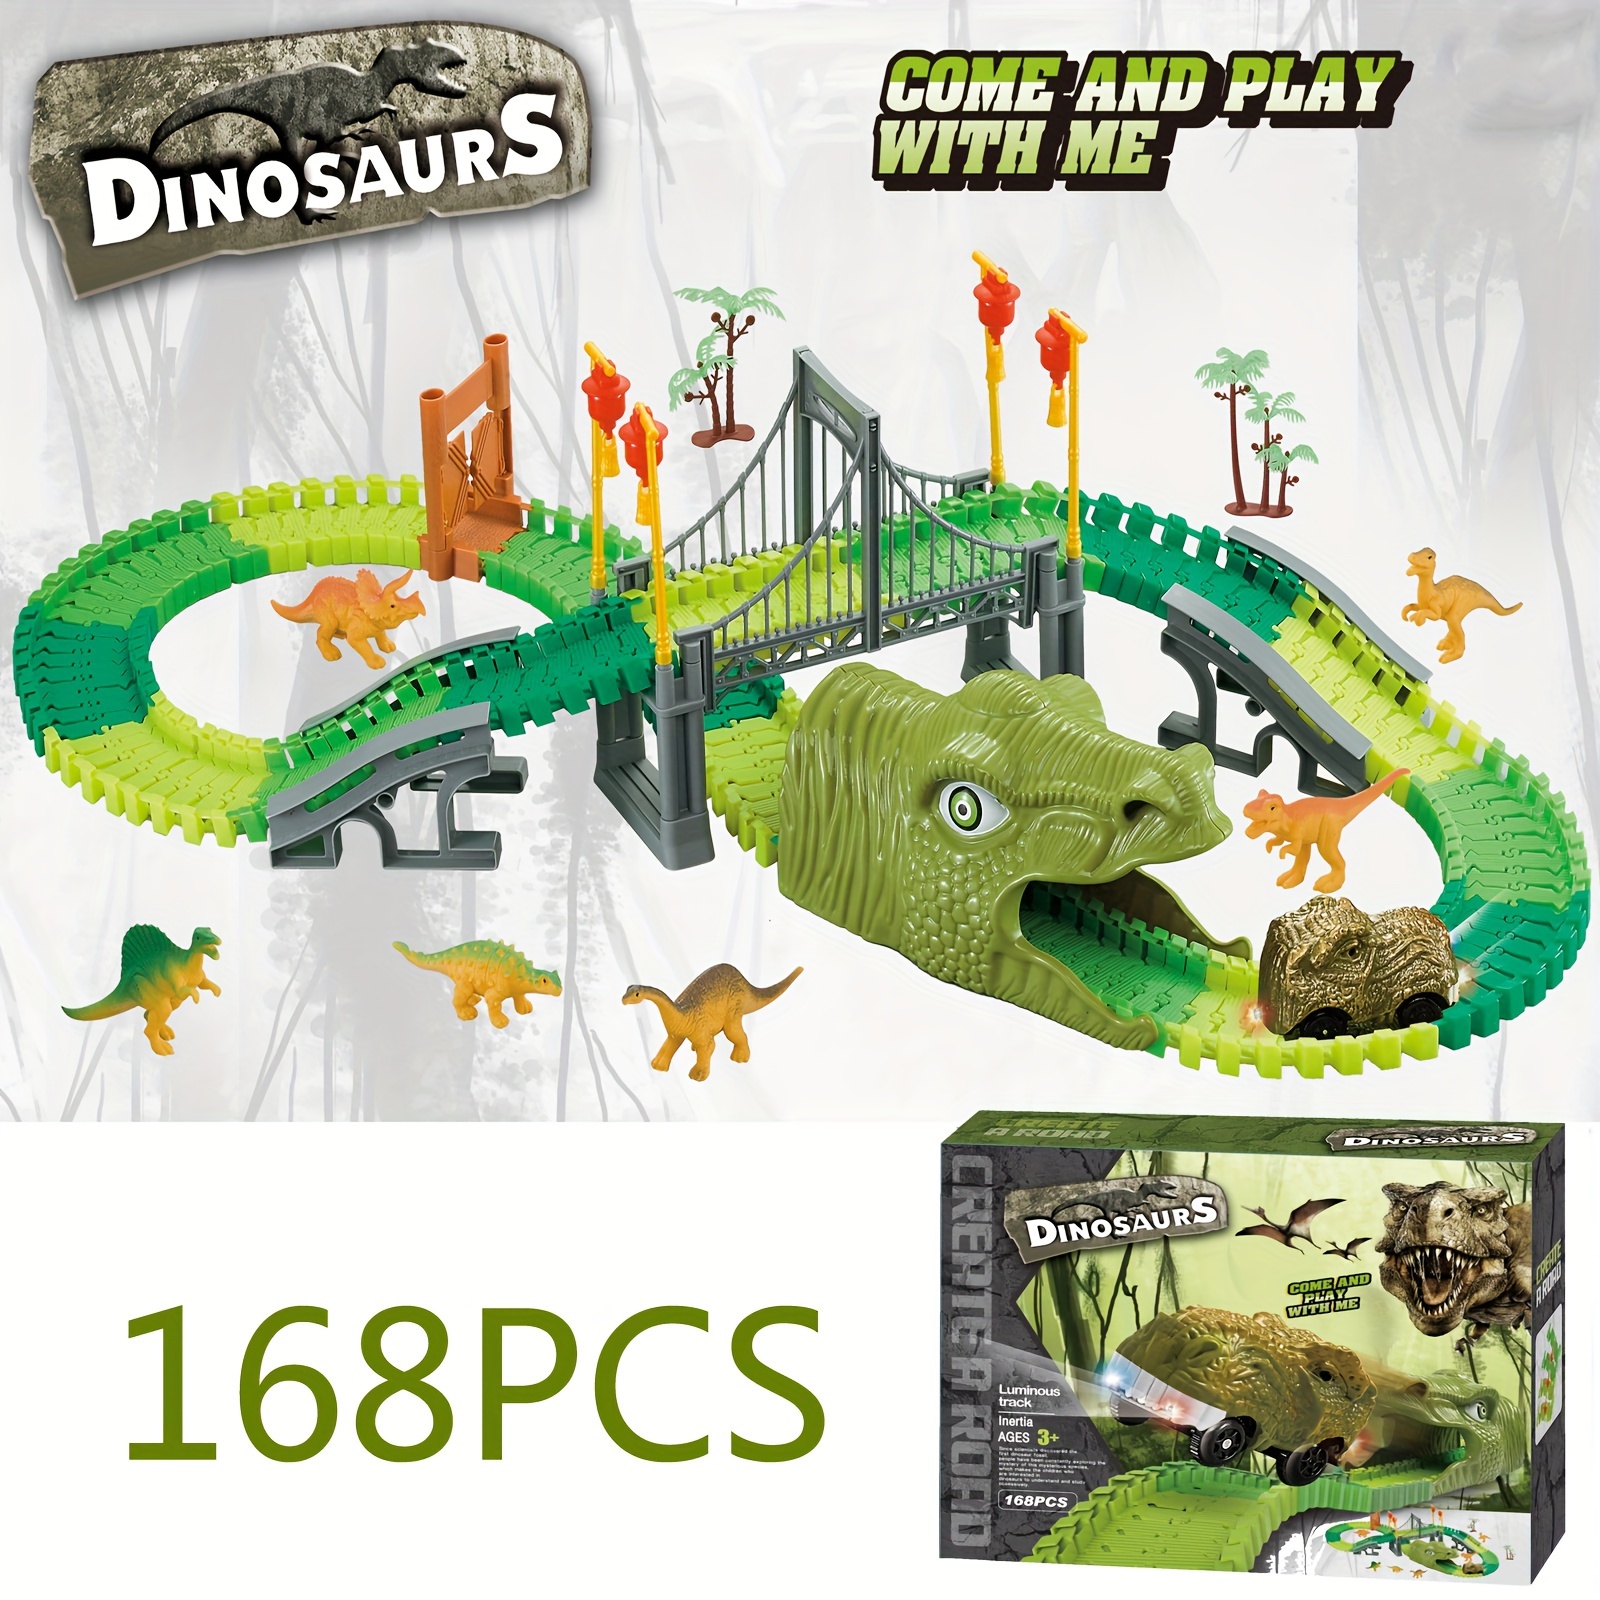 Camion jouet dinosaure pour enfants 3-7 avec lumières clignotantes, musique  et son rugissant, jouets de dinosaures 10 en 1 pour garçons et filles, 3  voitures de dinosaures à reculons, 6